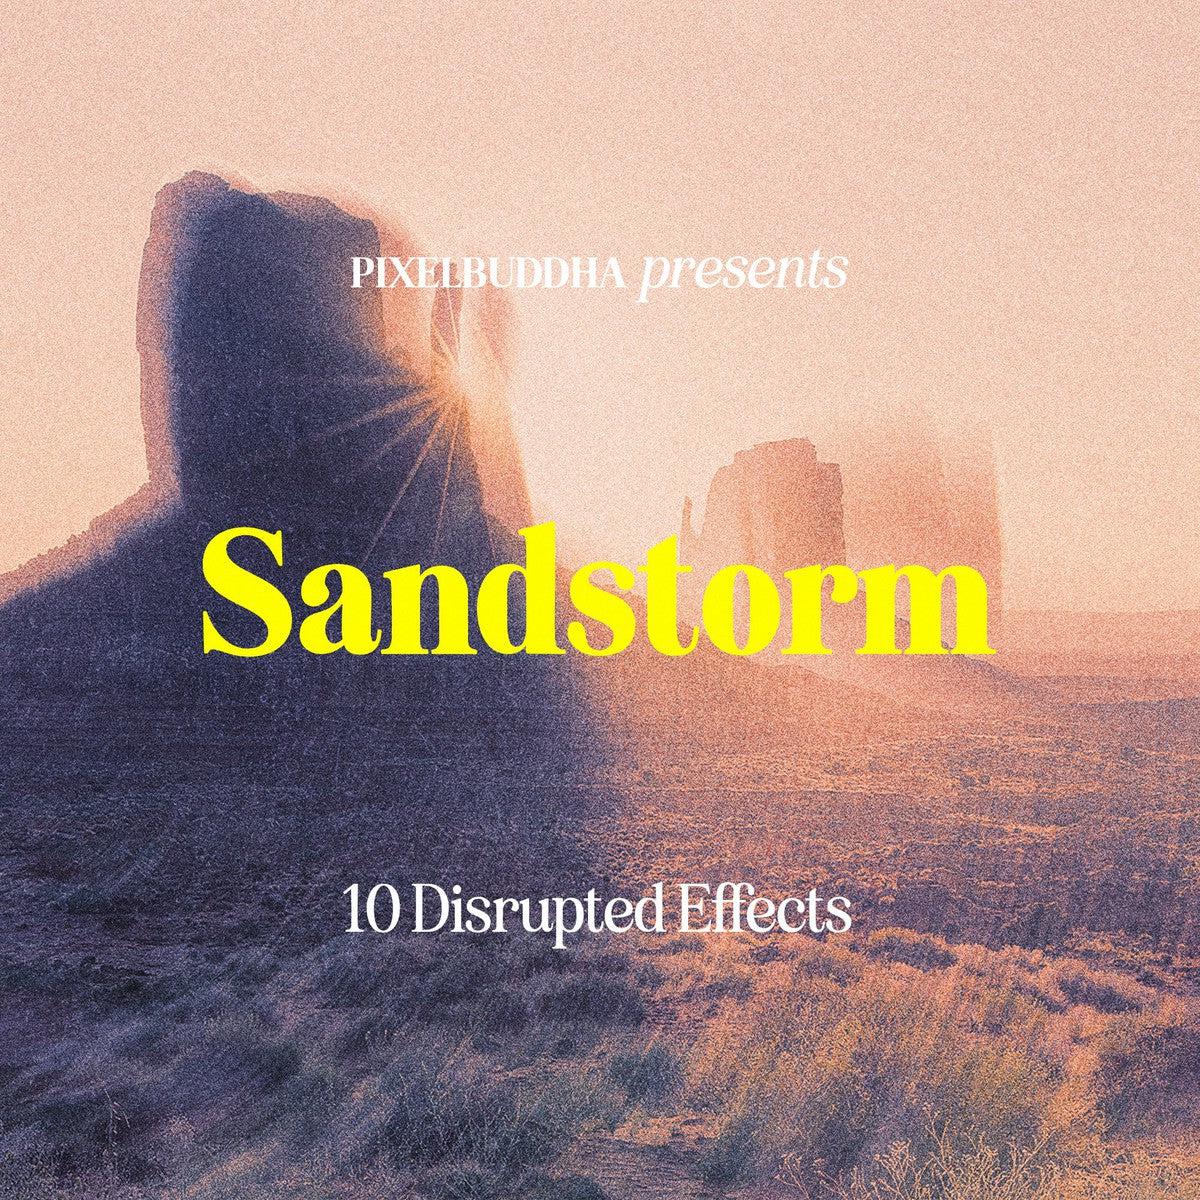 Sandstorm Disrupted Photoshop Effect